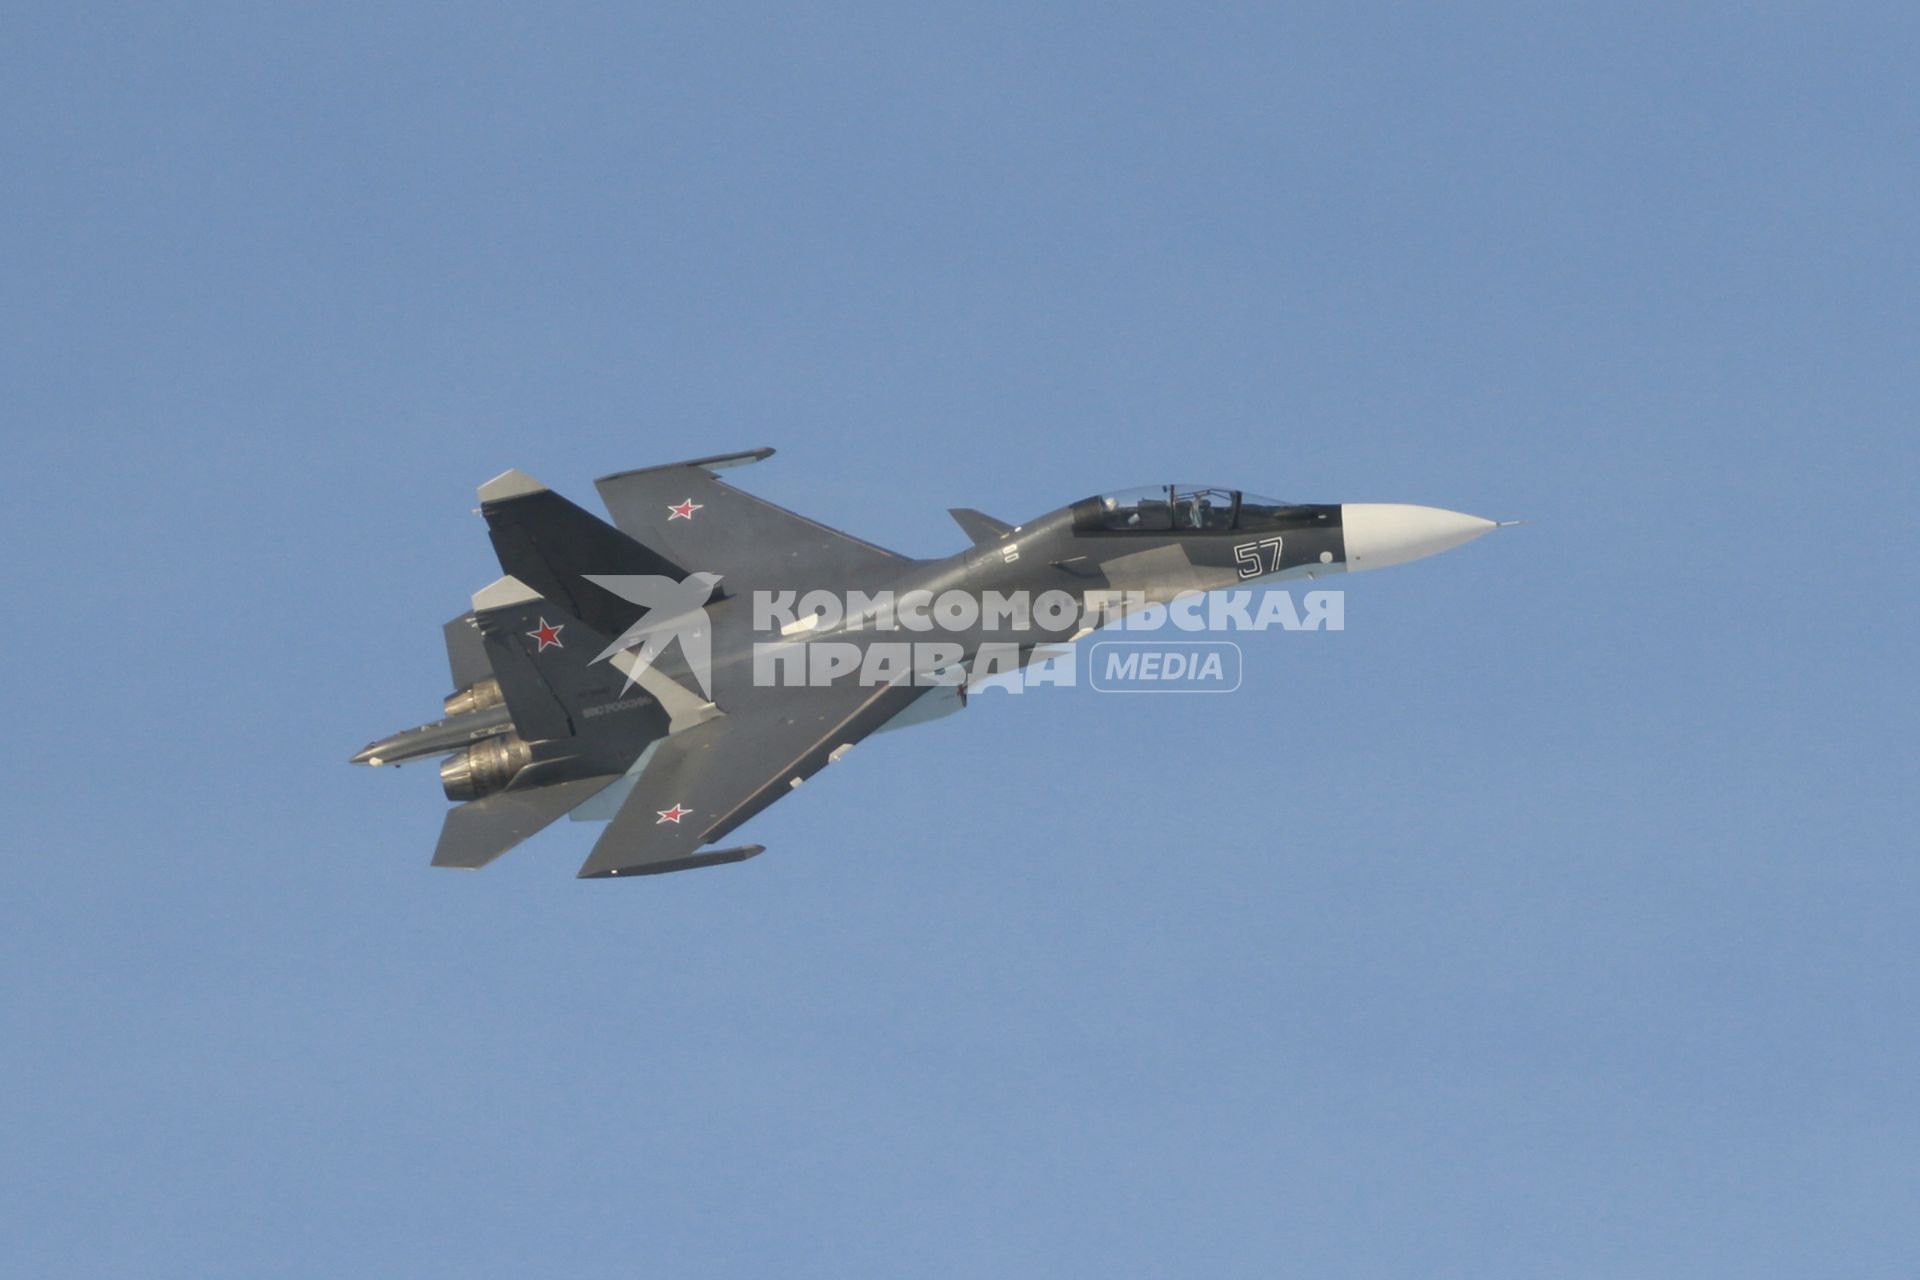 Барнаул. Авиашоу. На снимке: истребитель Су-30СМ пилотажной группы `Соколы России`.